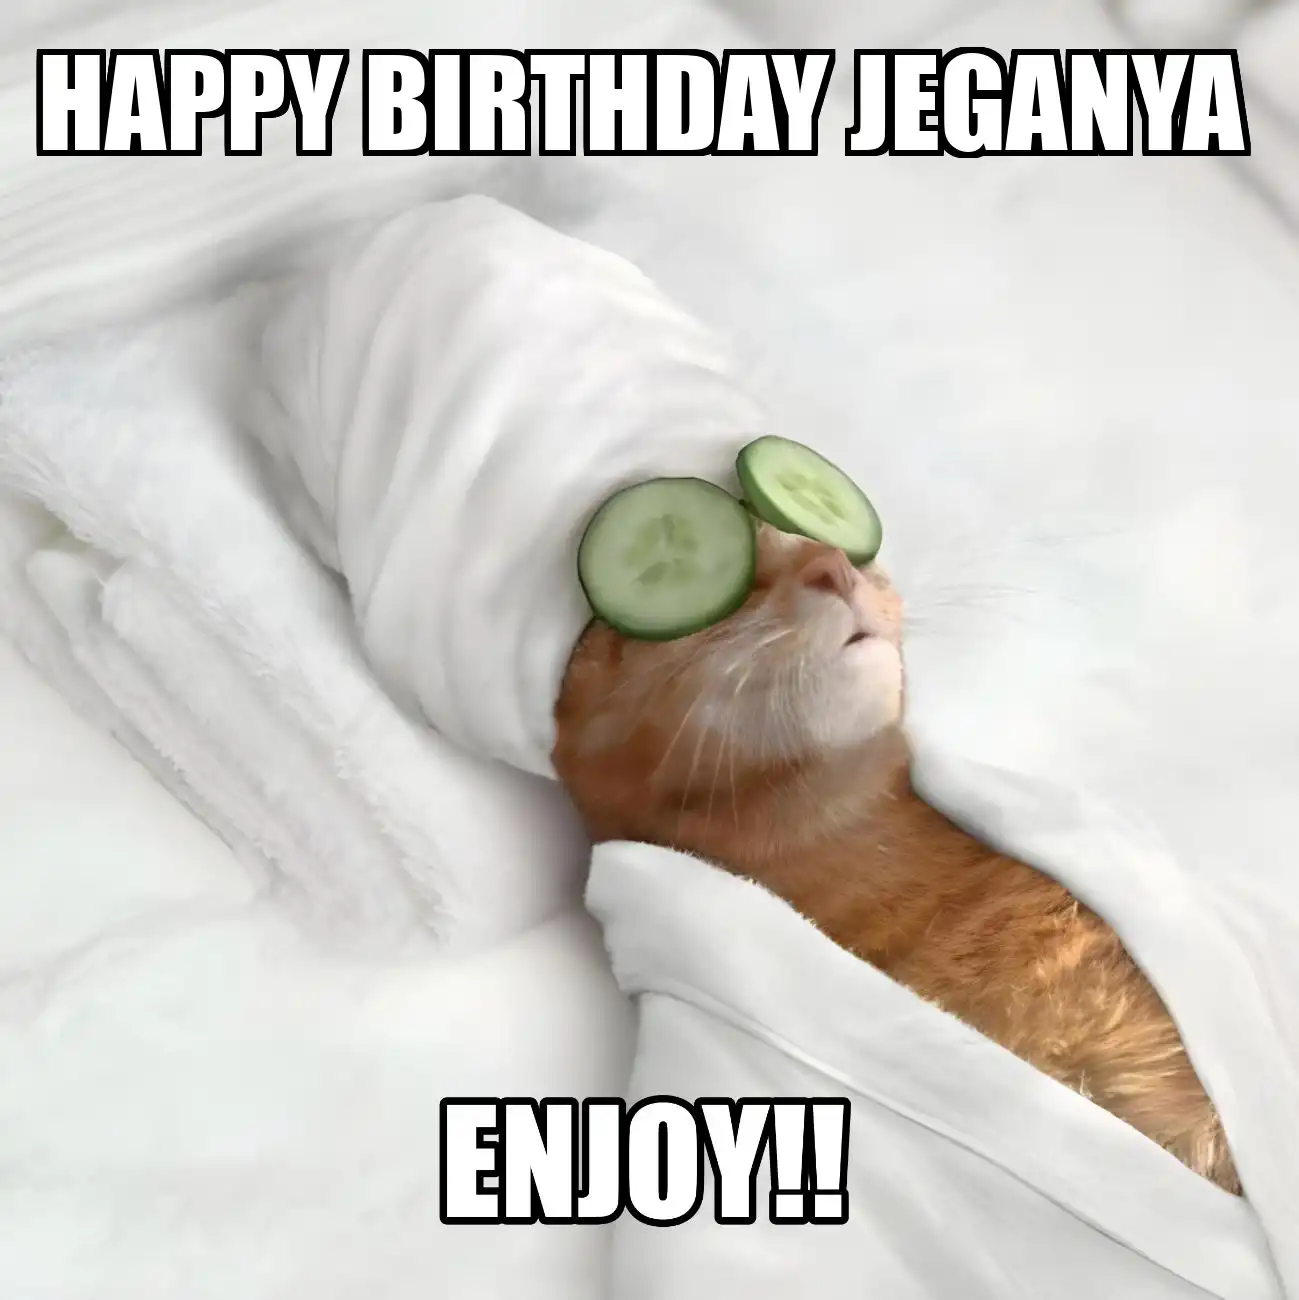 Happy Birthday Jeganya Enjoy Cat Meme